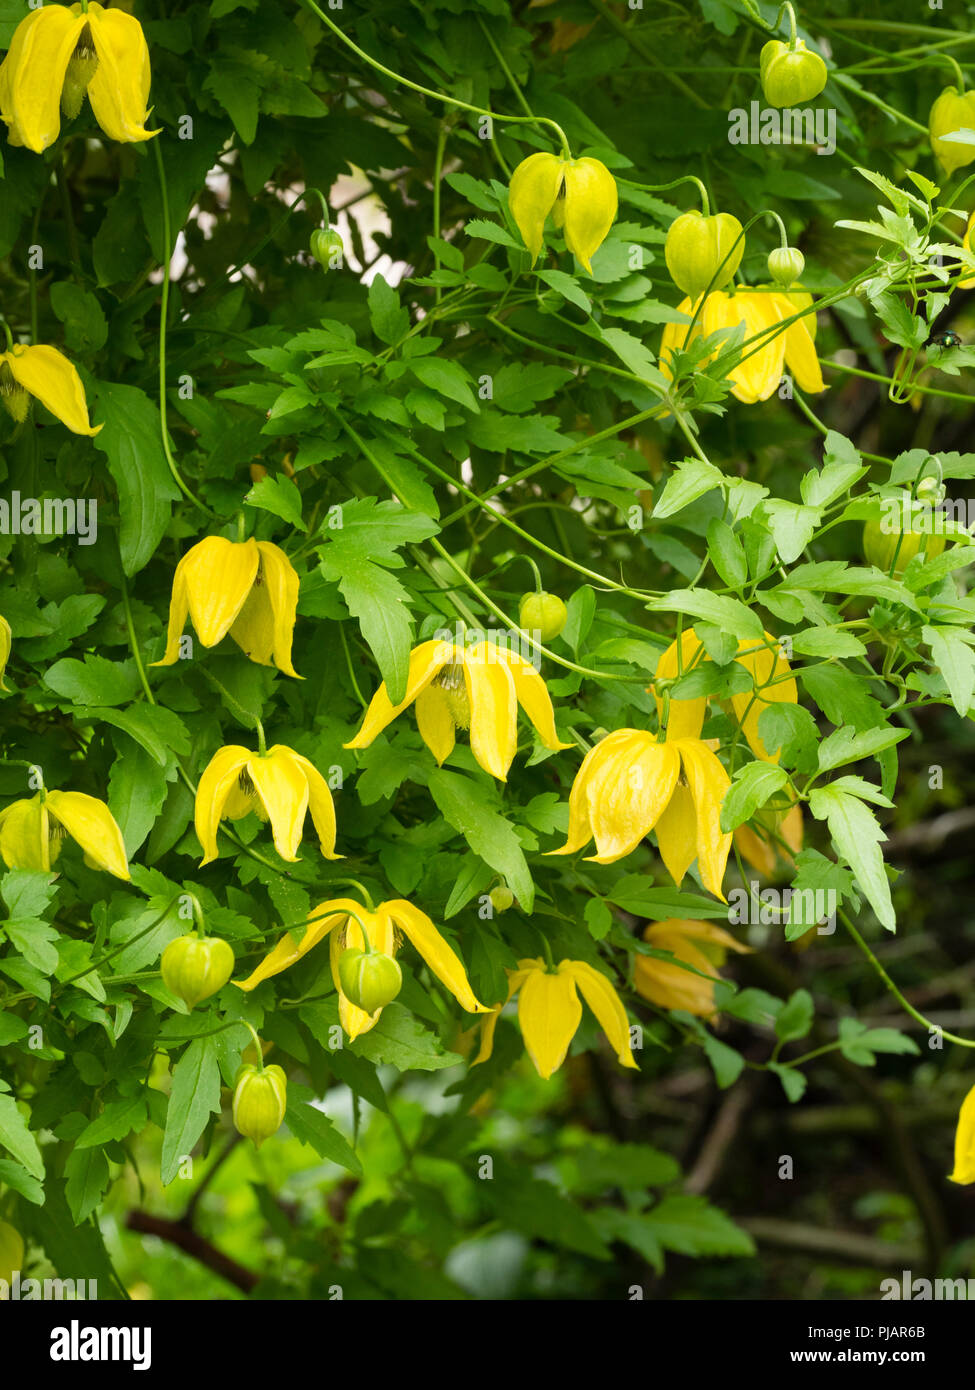 Gelbe Glocke Blumen Der winterharte Kletterpflanze, Clematis tangutica 'Lambton Park'. Blumen sind größer als die Arten. Stockfoto